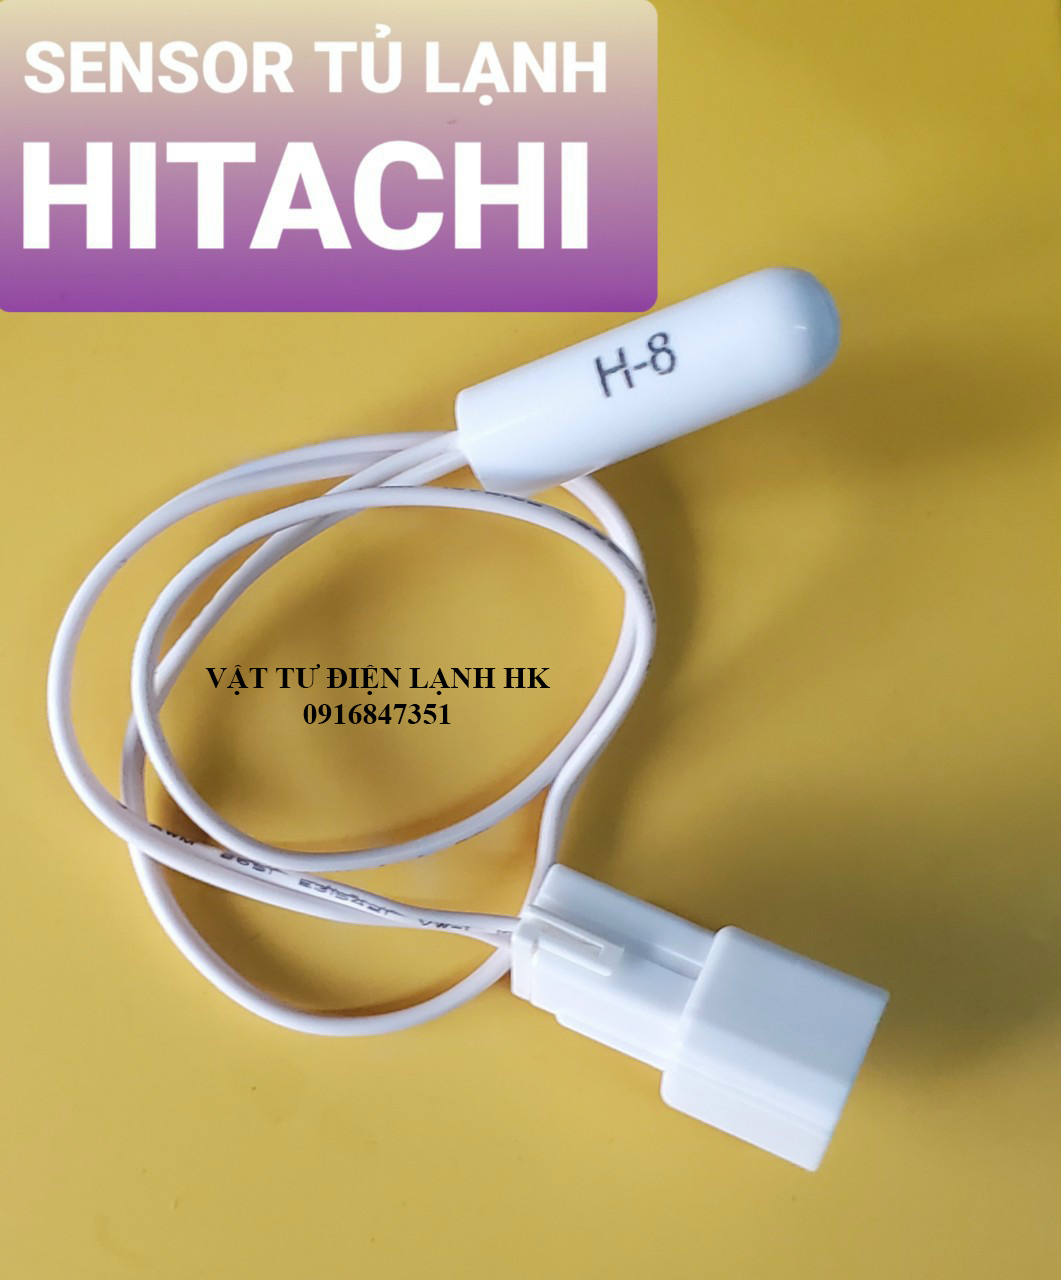 Sensor dùng cho tủ lạnh HITACHI H-8 - Đầu dò cảm biến nhiệt độ tl Hi H8